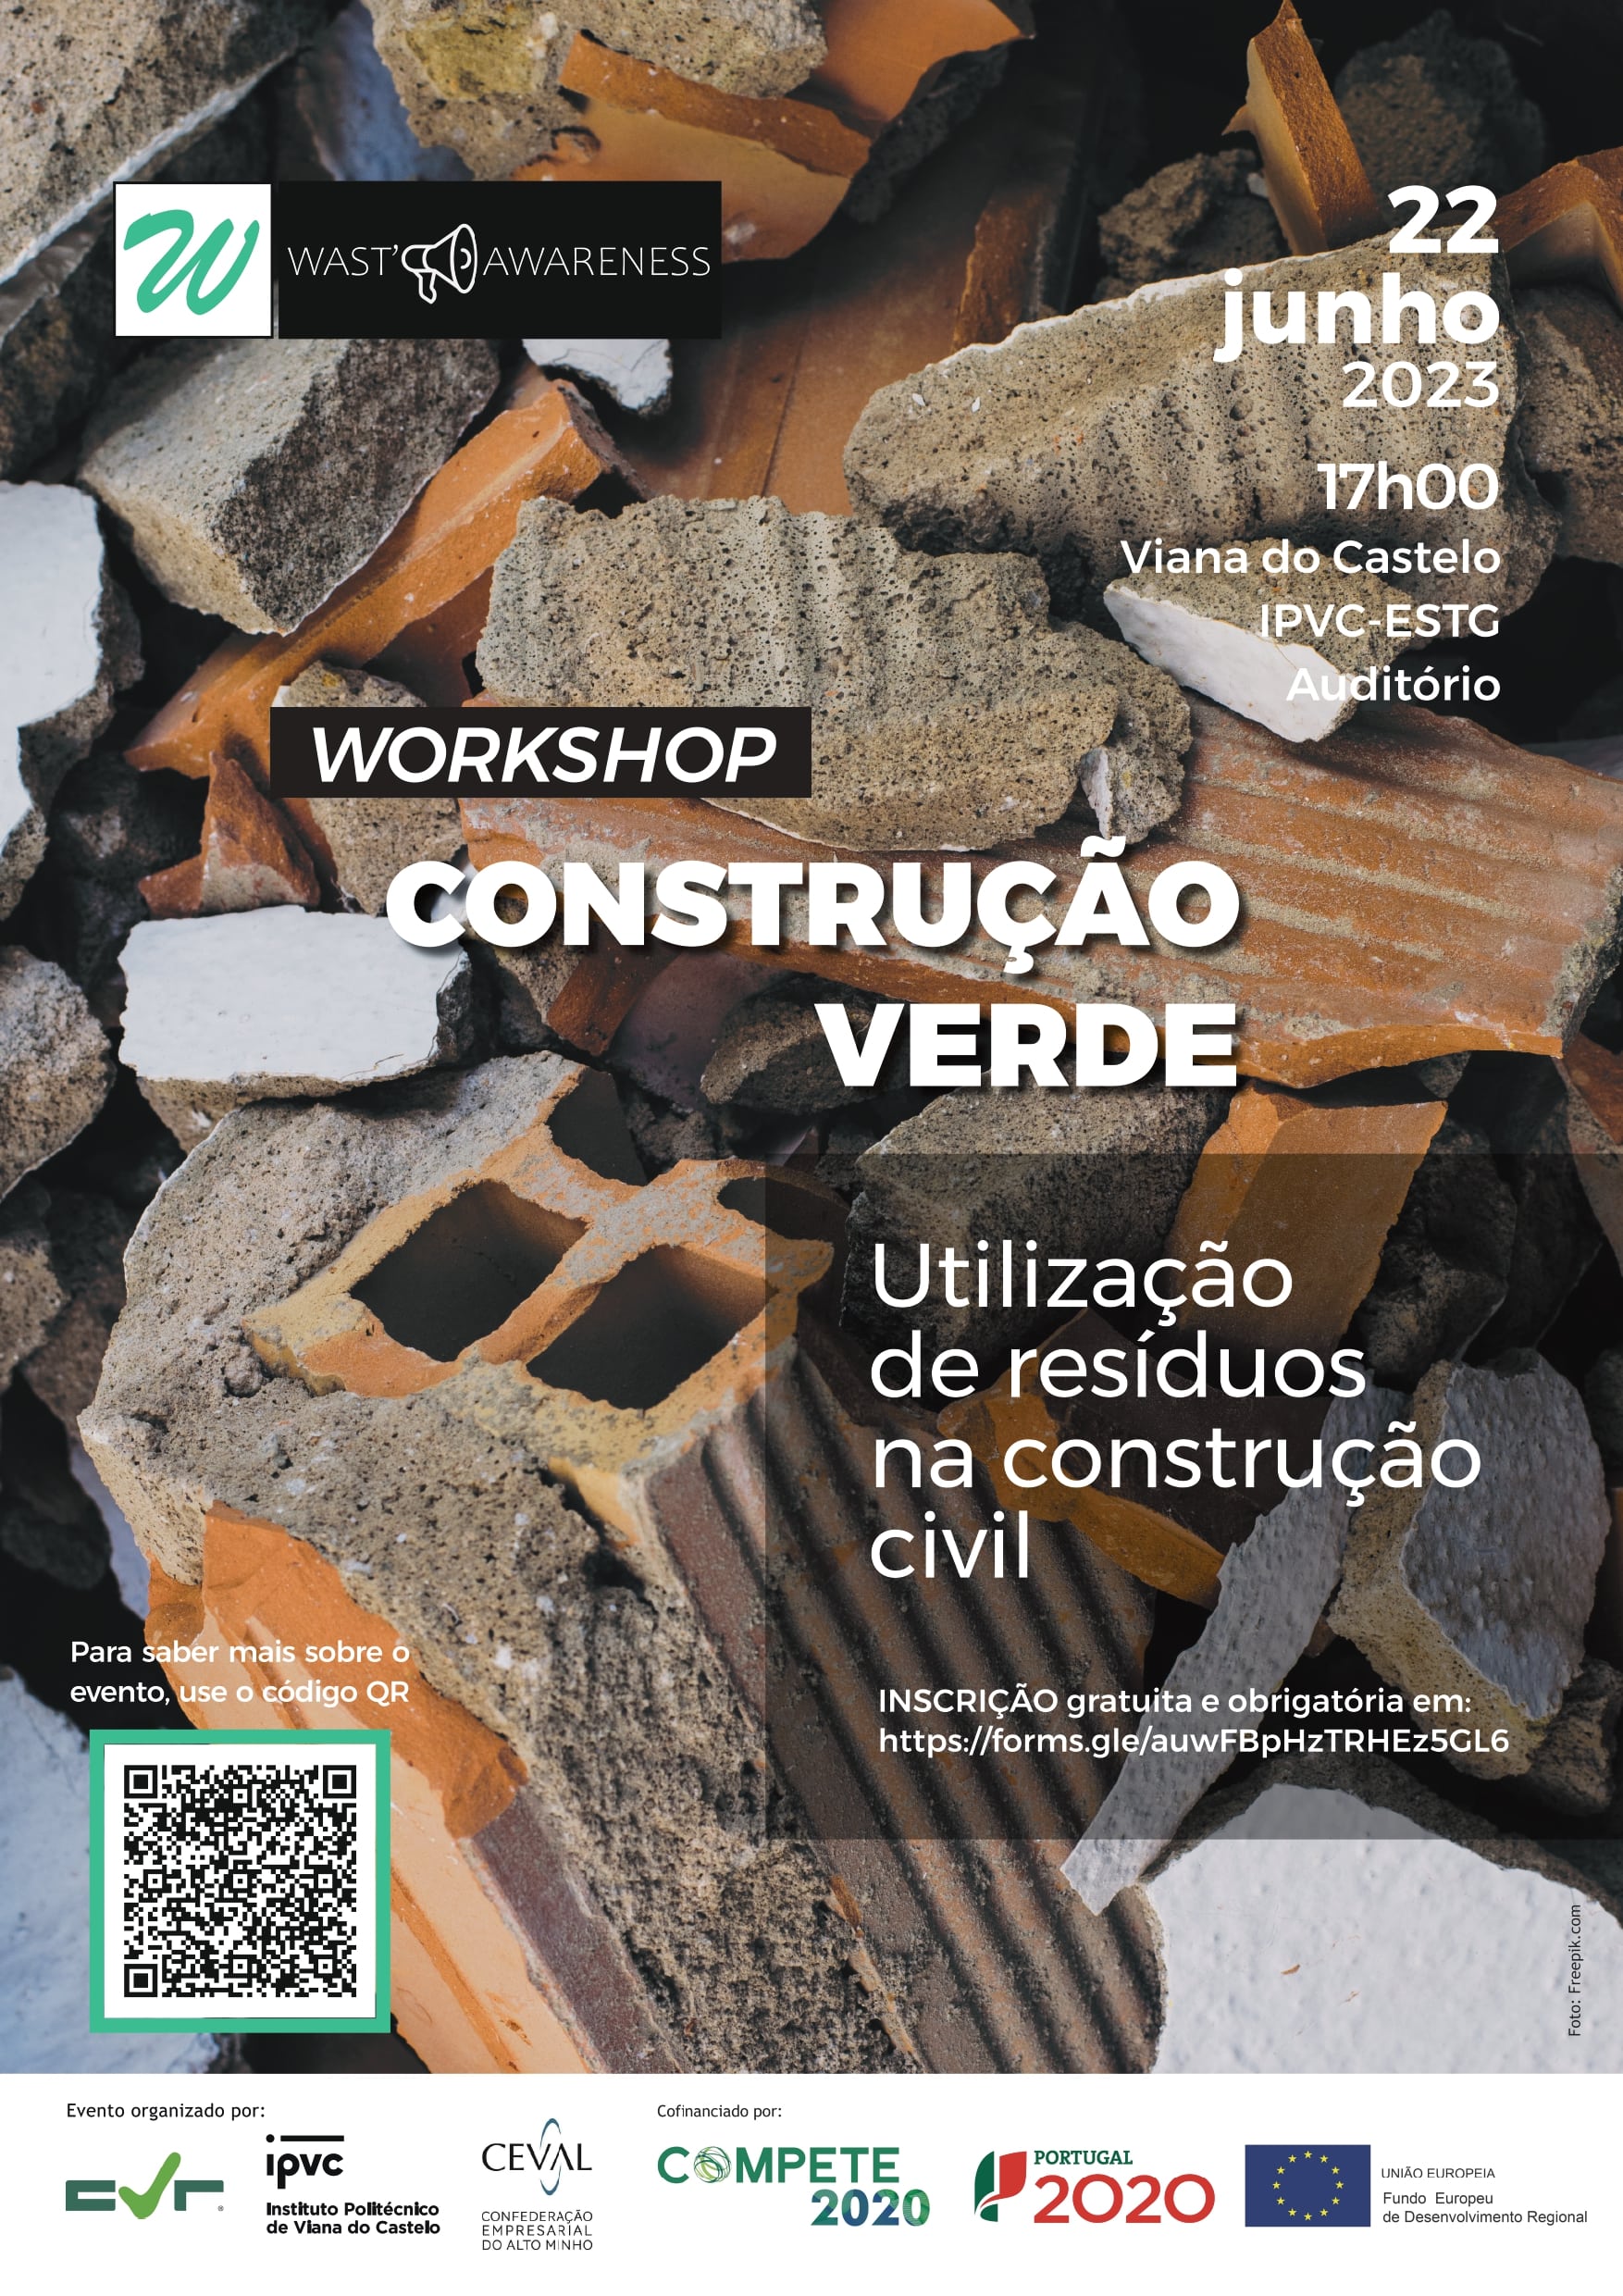 Novo workshop grátis sobre “Construção Verde: utilização de resíduos na construção civil”